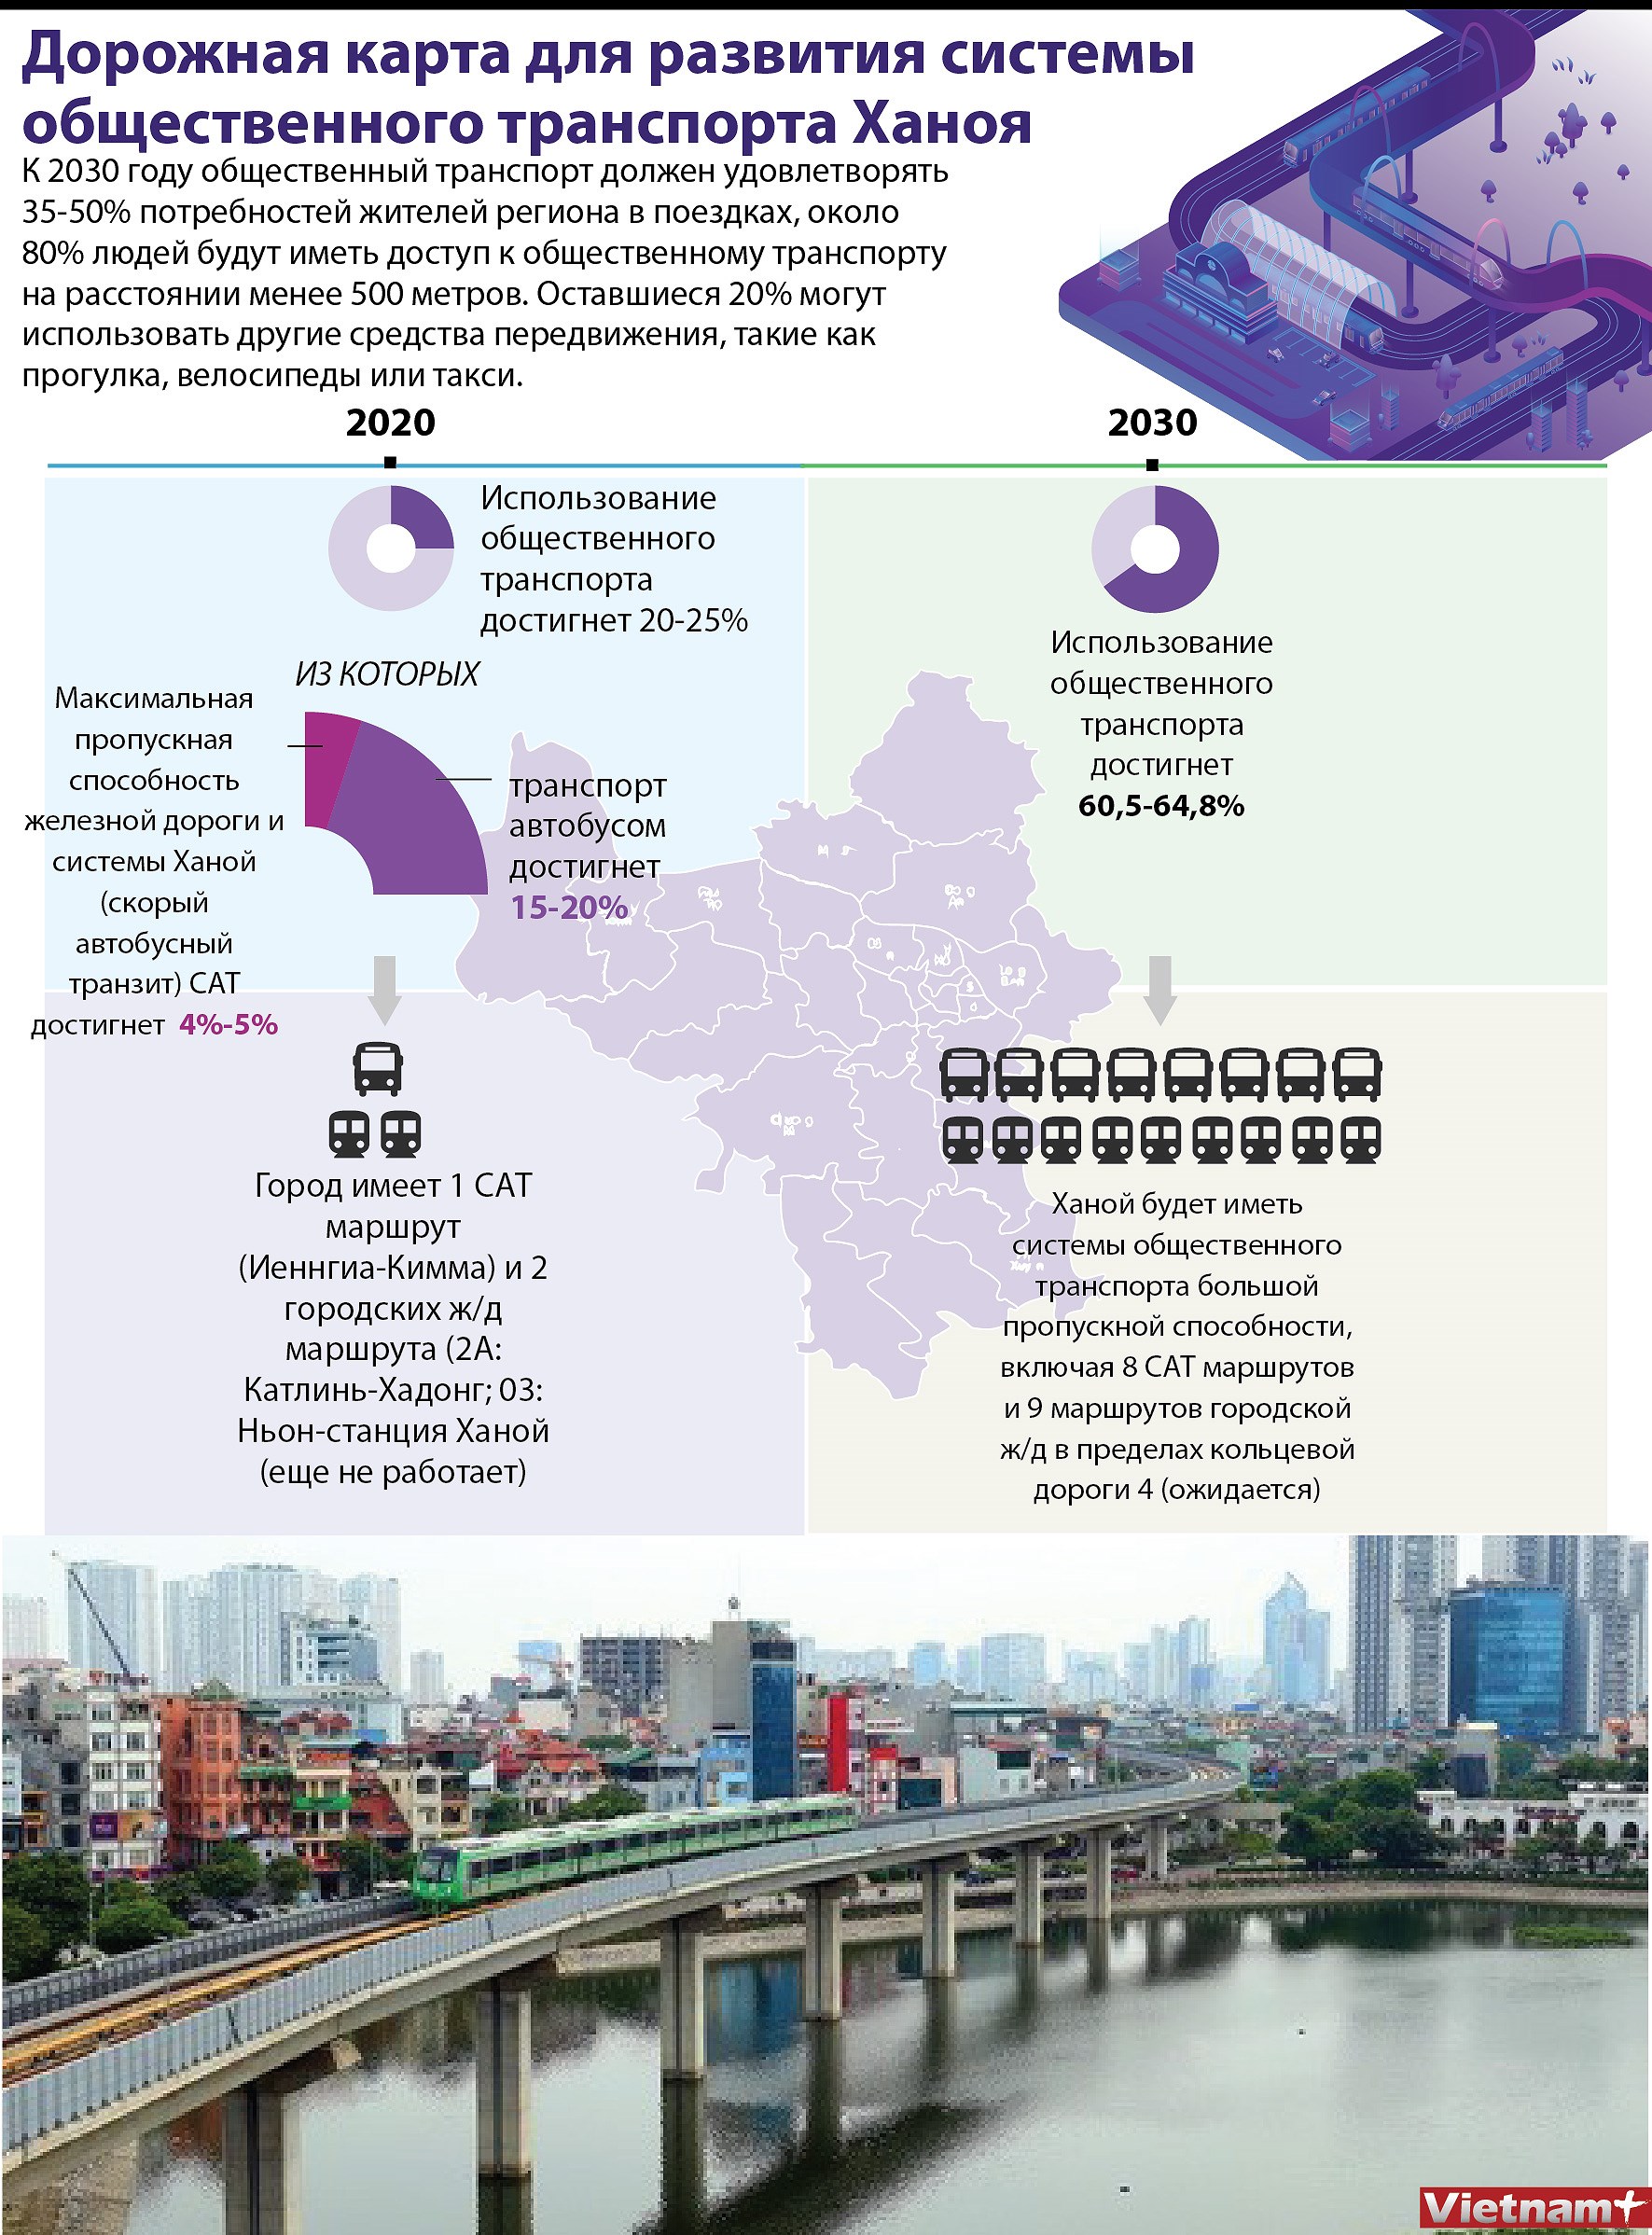 Дорожная карта для развития системы общественного транспорта Ханоя hinh anh 1